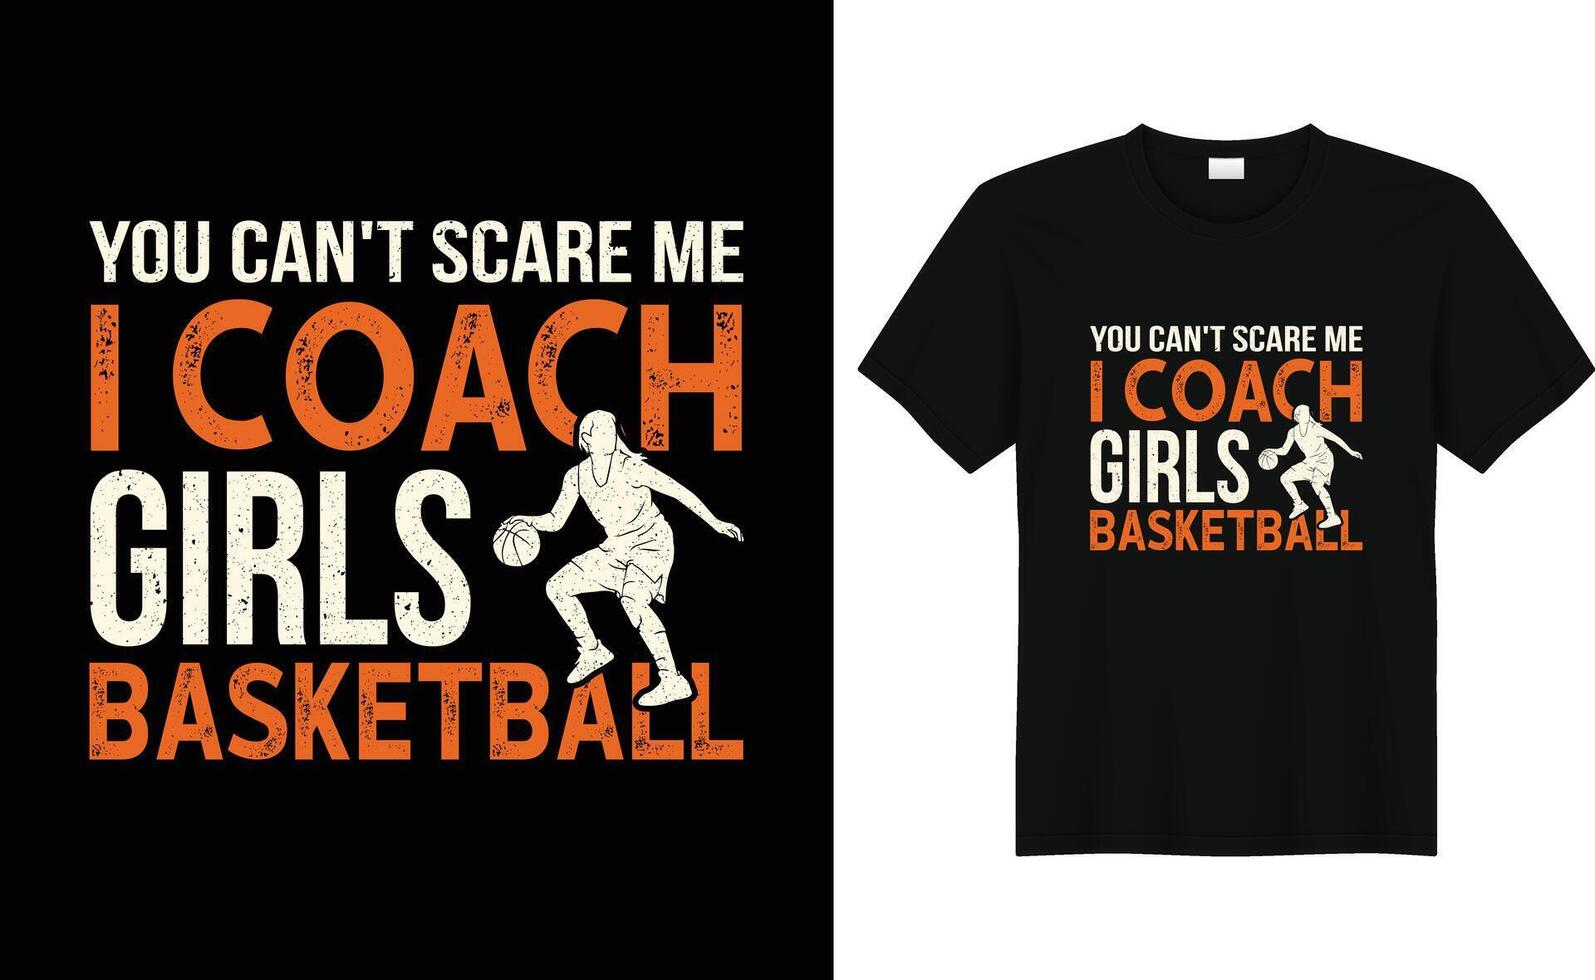 basketbal sporten, de kampioenen, typografie grafisch ontwerp, voor t-shirt afdrukken, vector illustratie